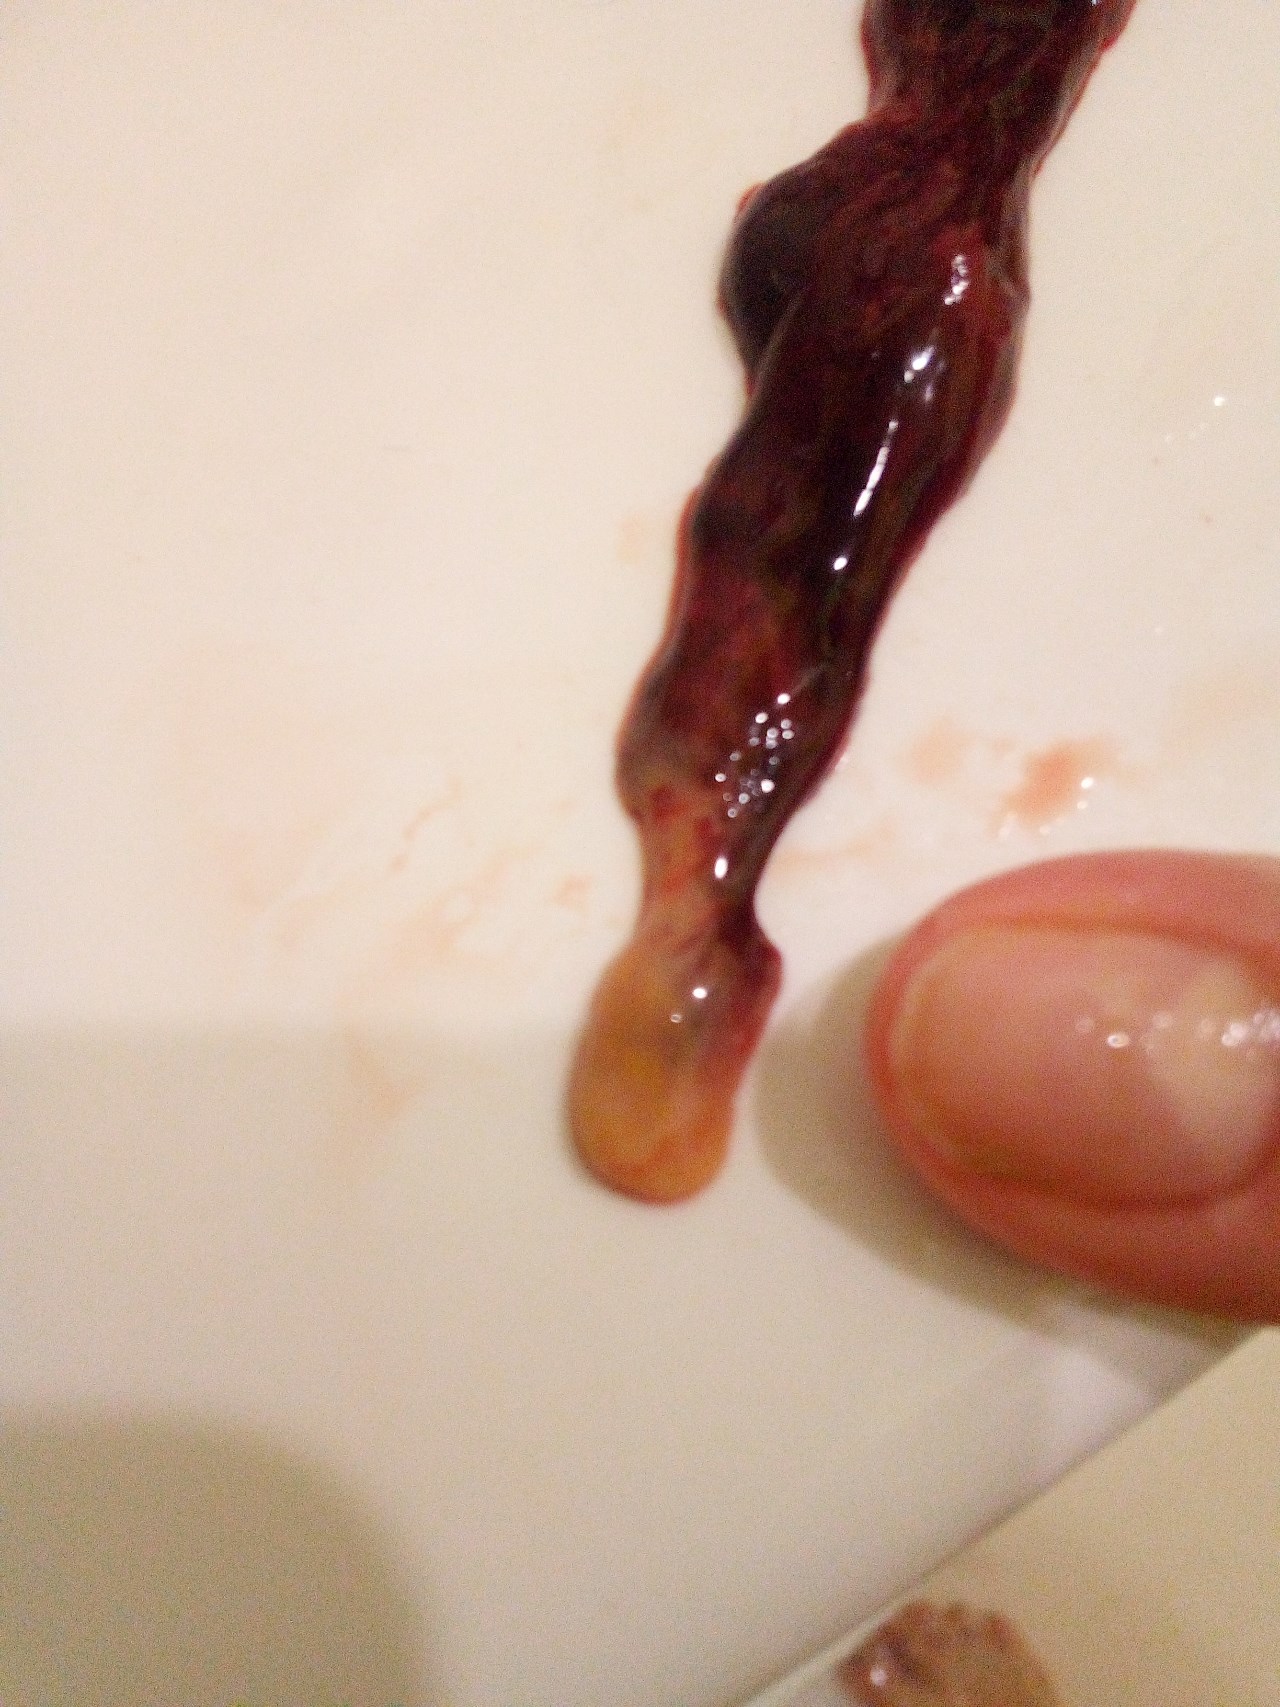 сгустки крови в моче и сперме у мужчин фото 66